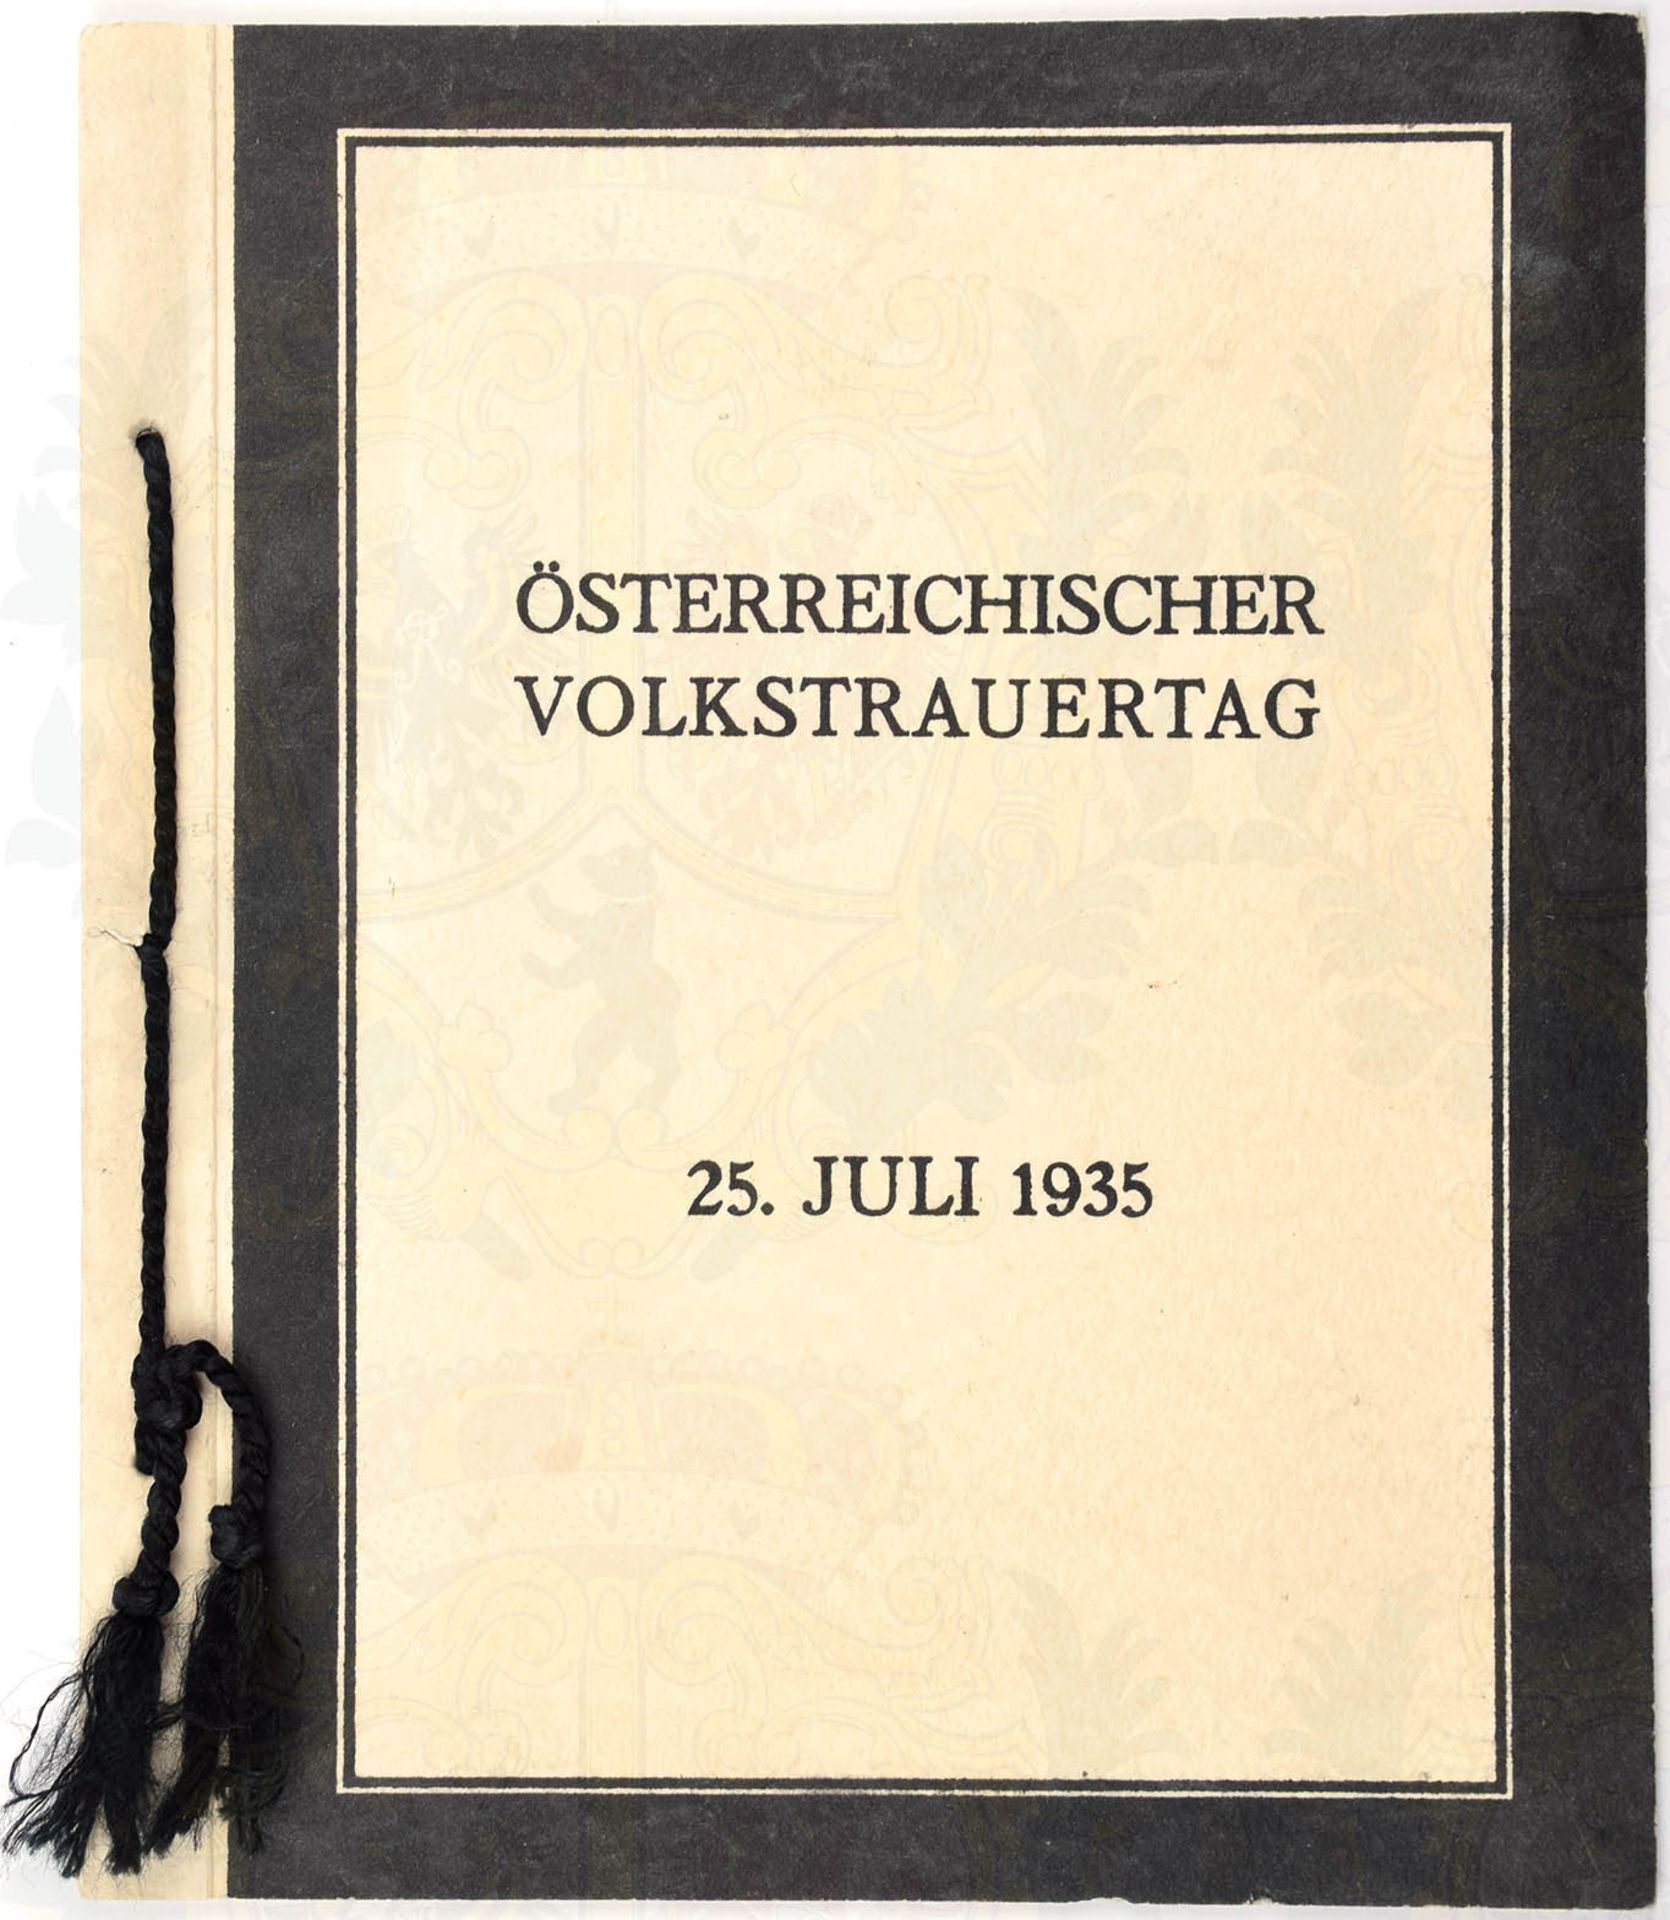 KLAPPKARTE, Österreichischer Volkstrauertag 25. Juli 1935, m. 2 Gedenk-Marken Dollfuß, zu 24